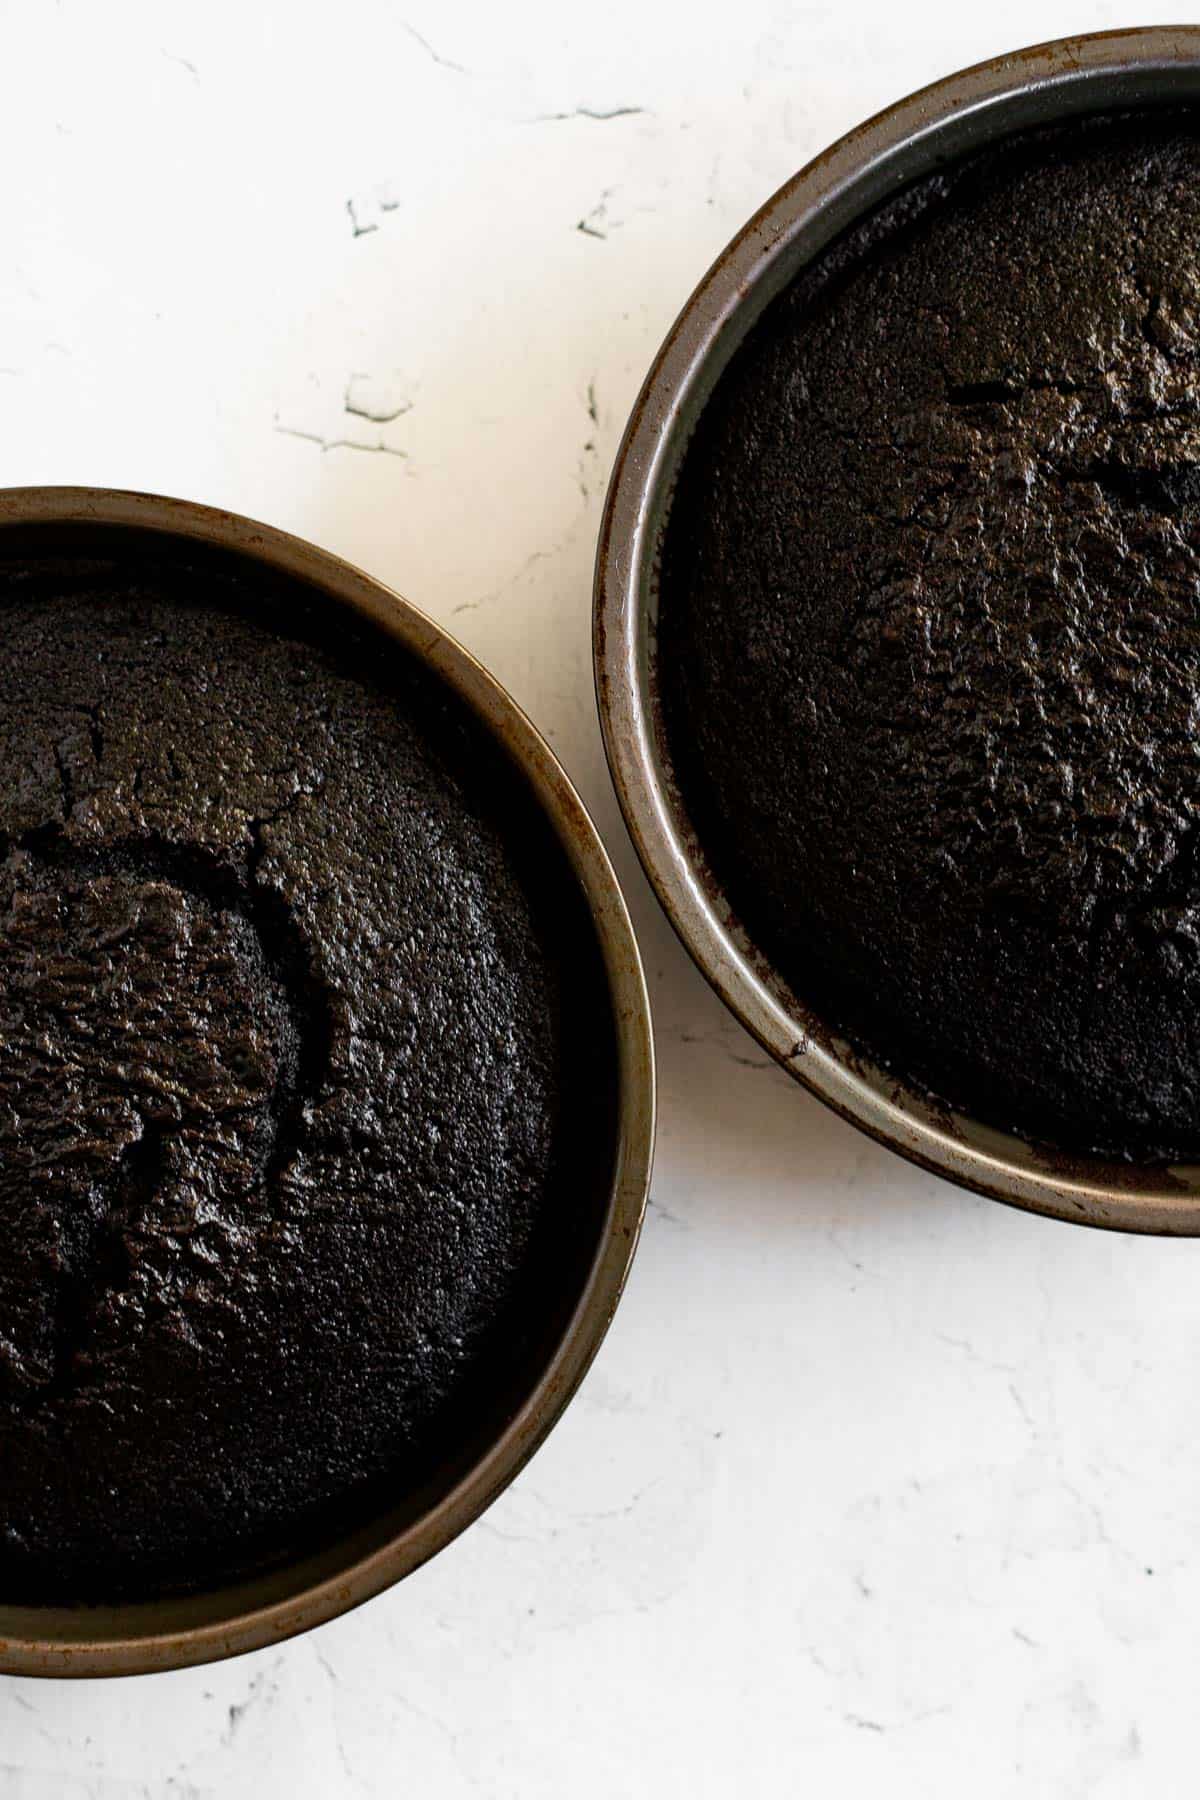 black velvet cakes baked in 8 inch round pans.